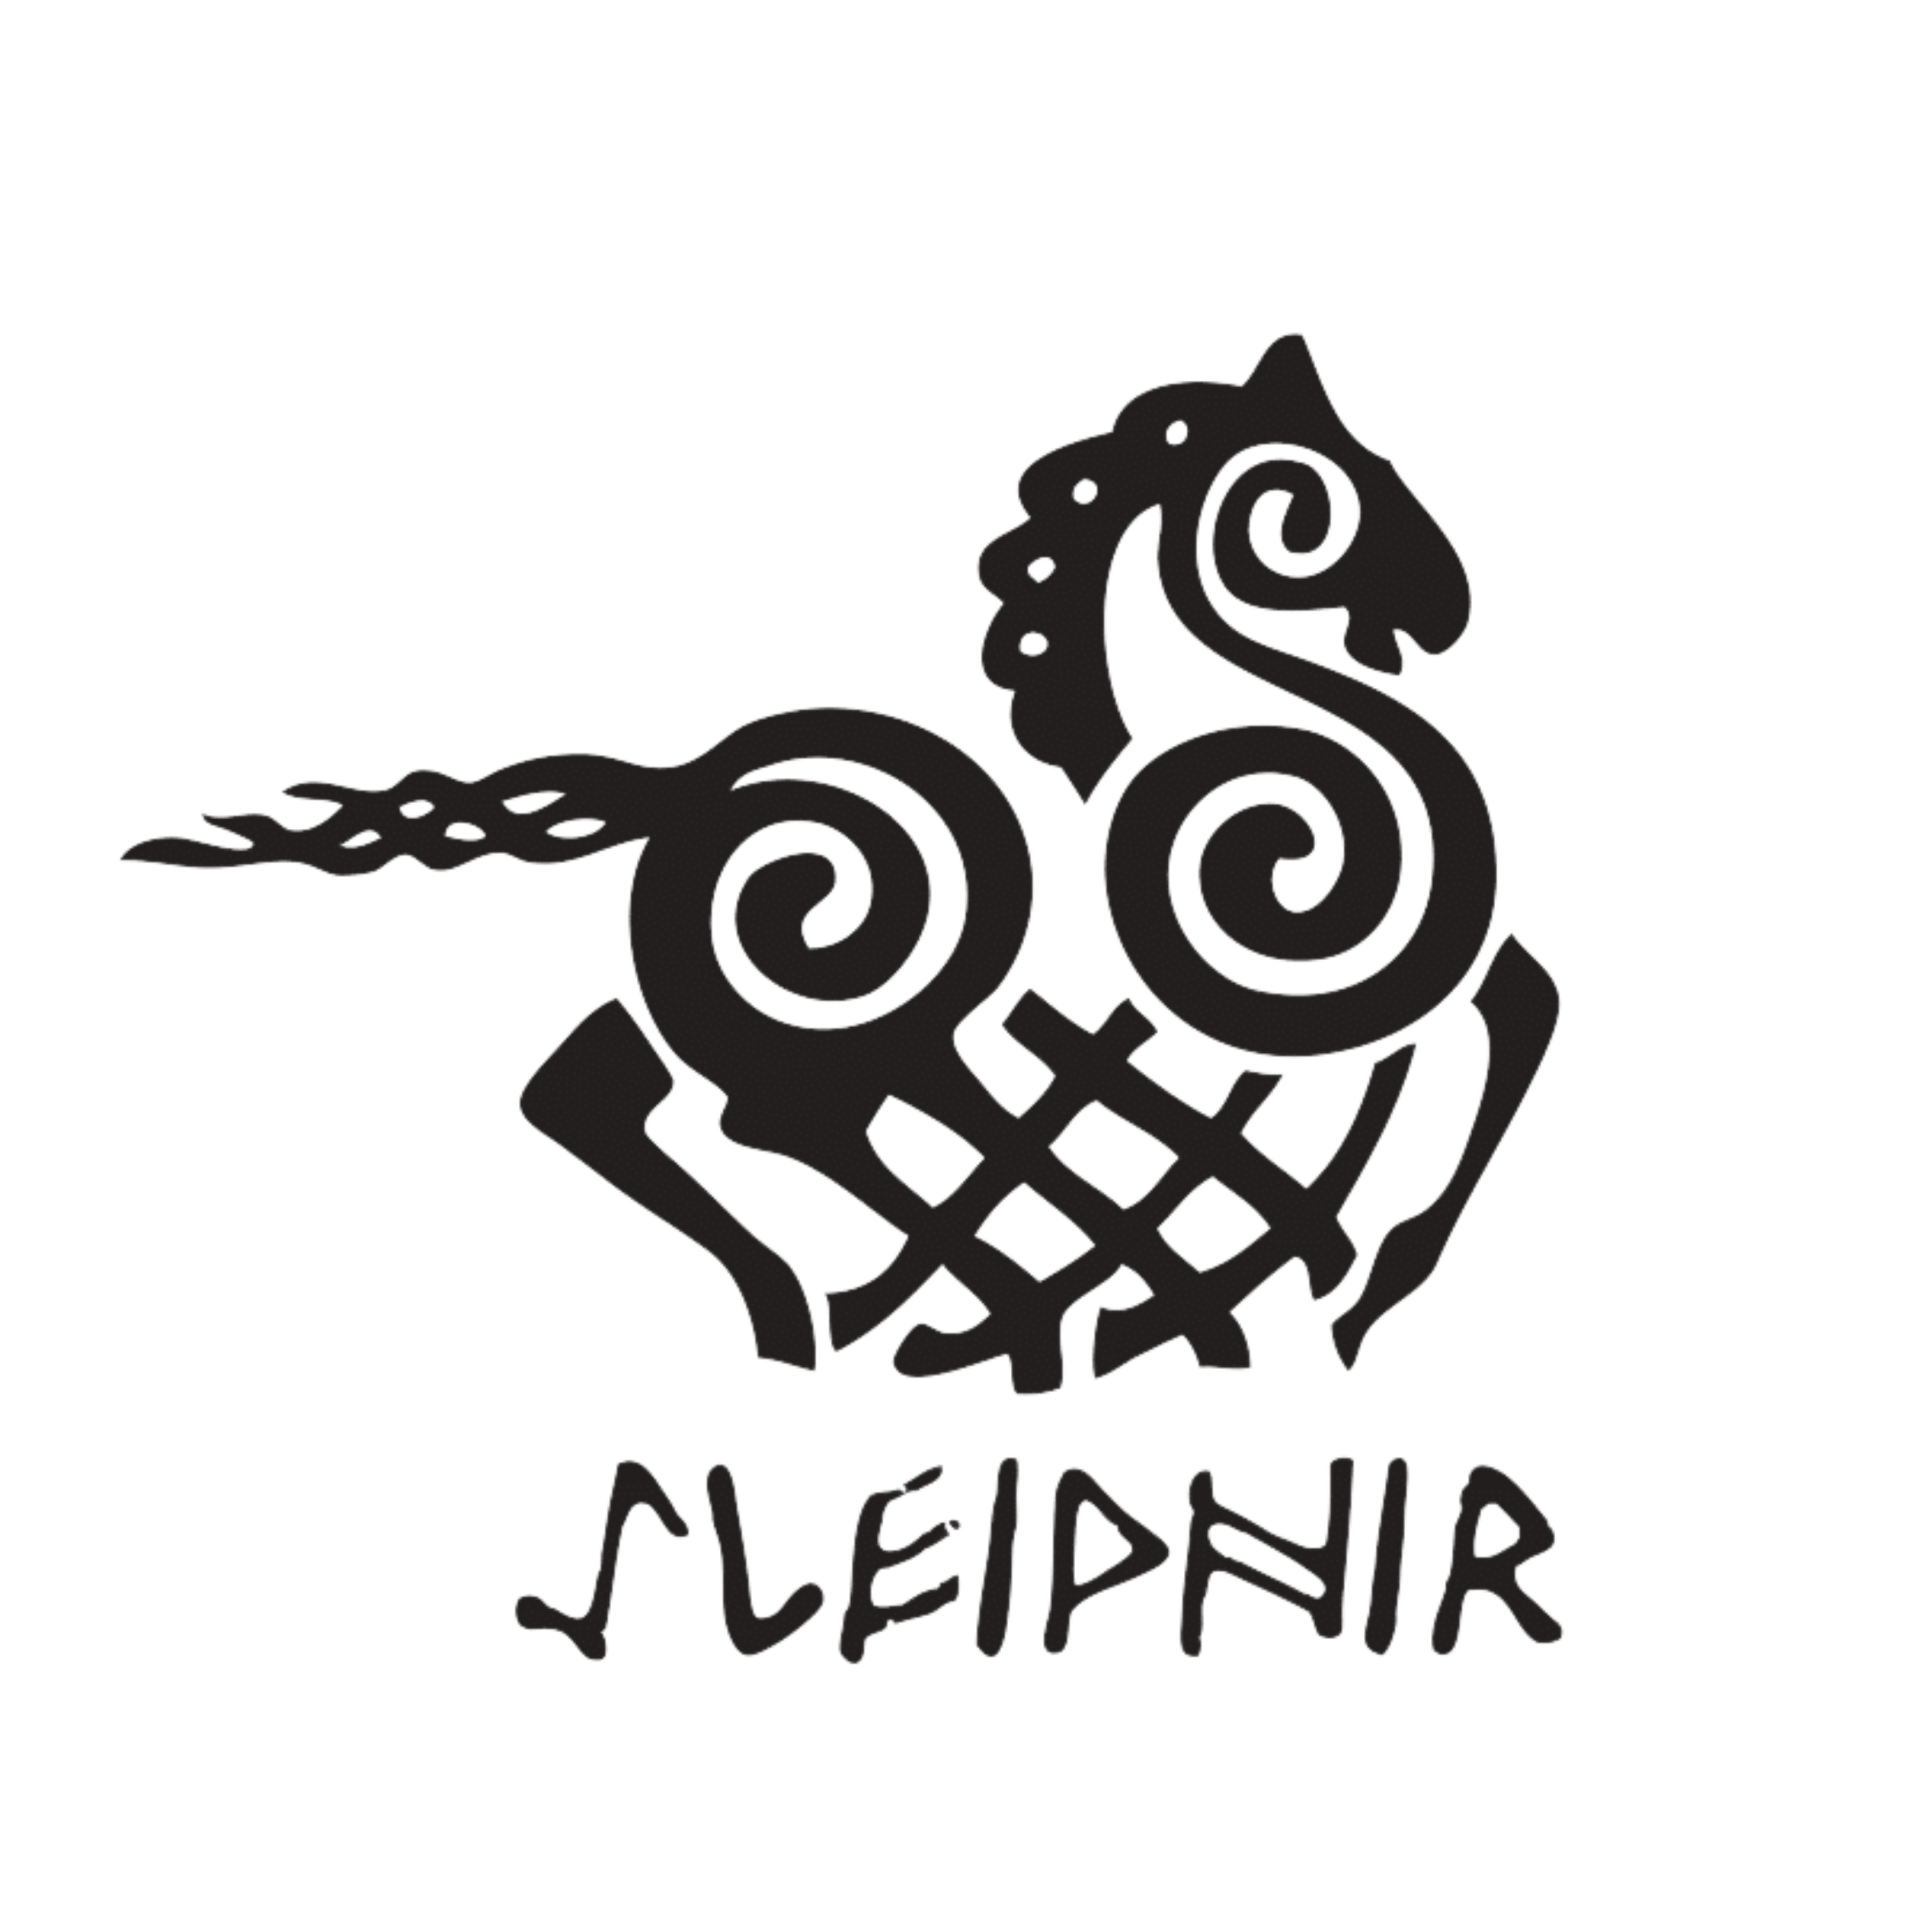 Sleipnir Tours Iceland logo